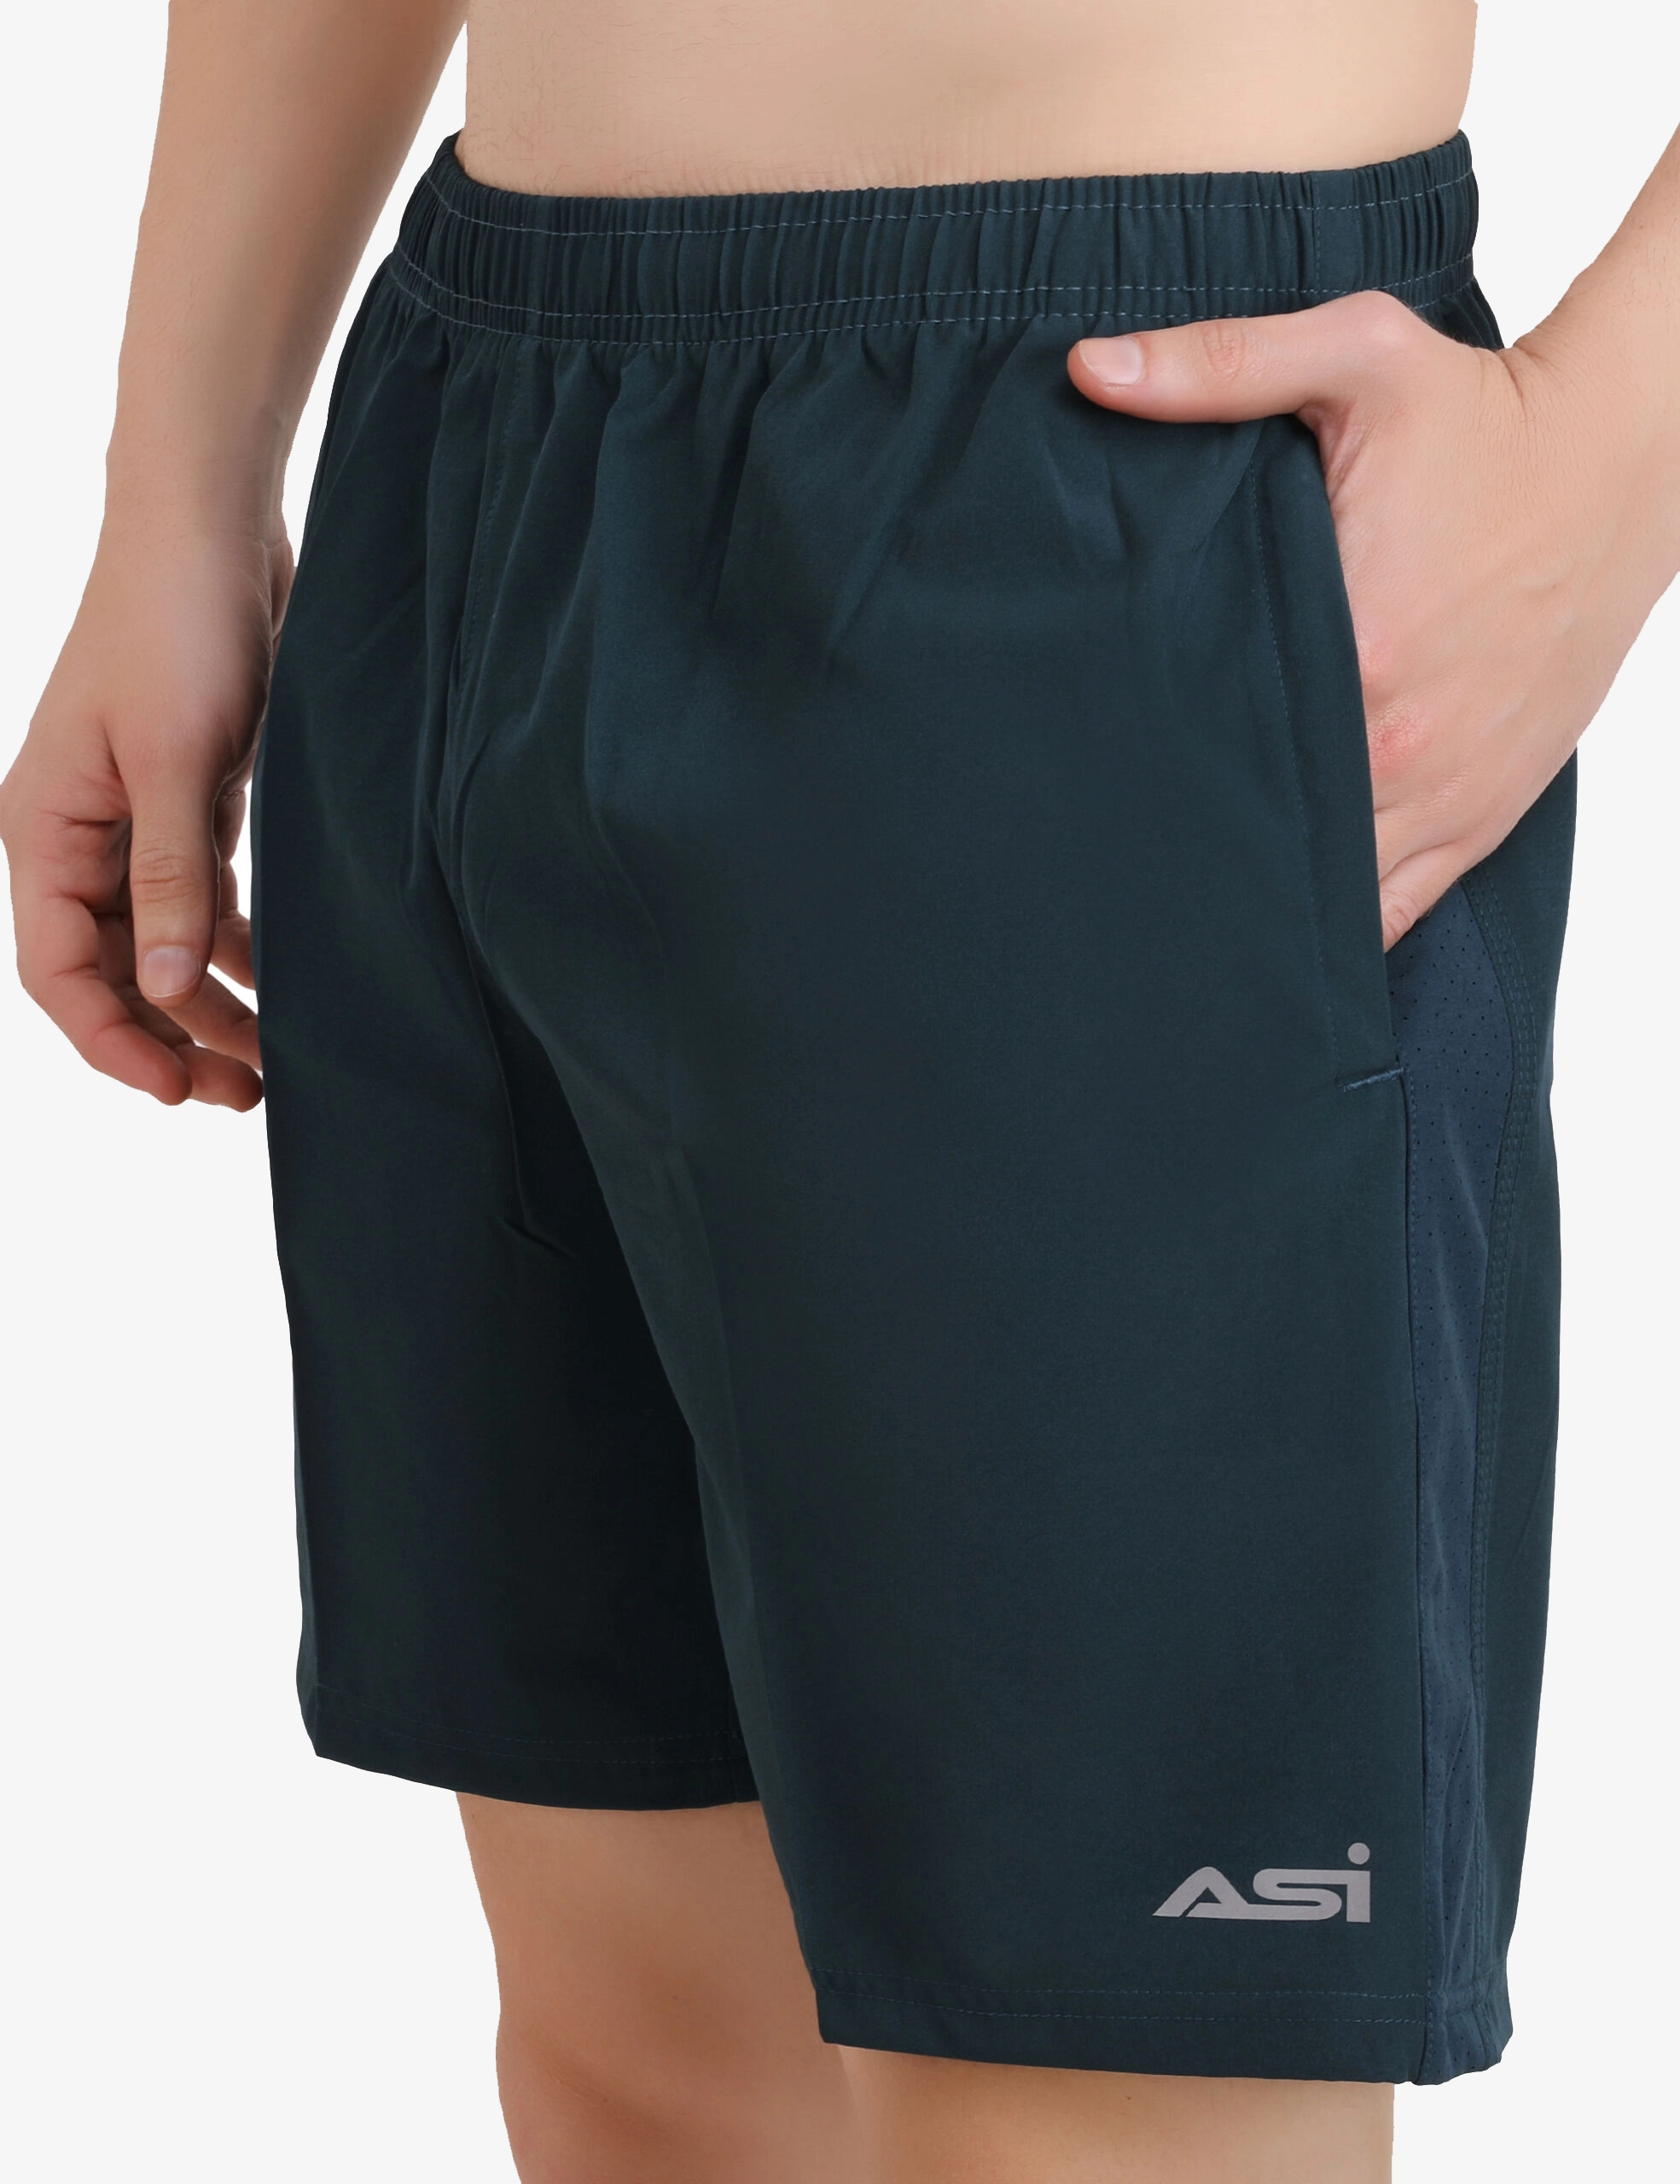 ASI Range Air Force Shorts for Men